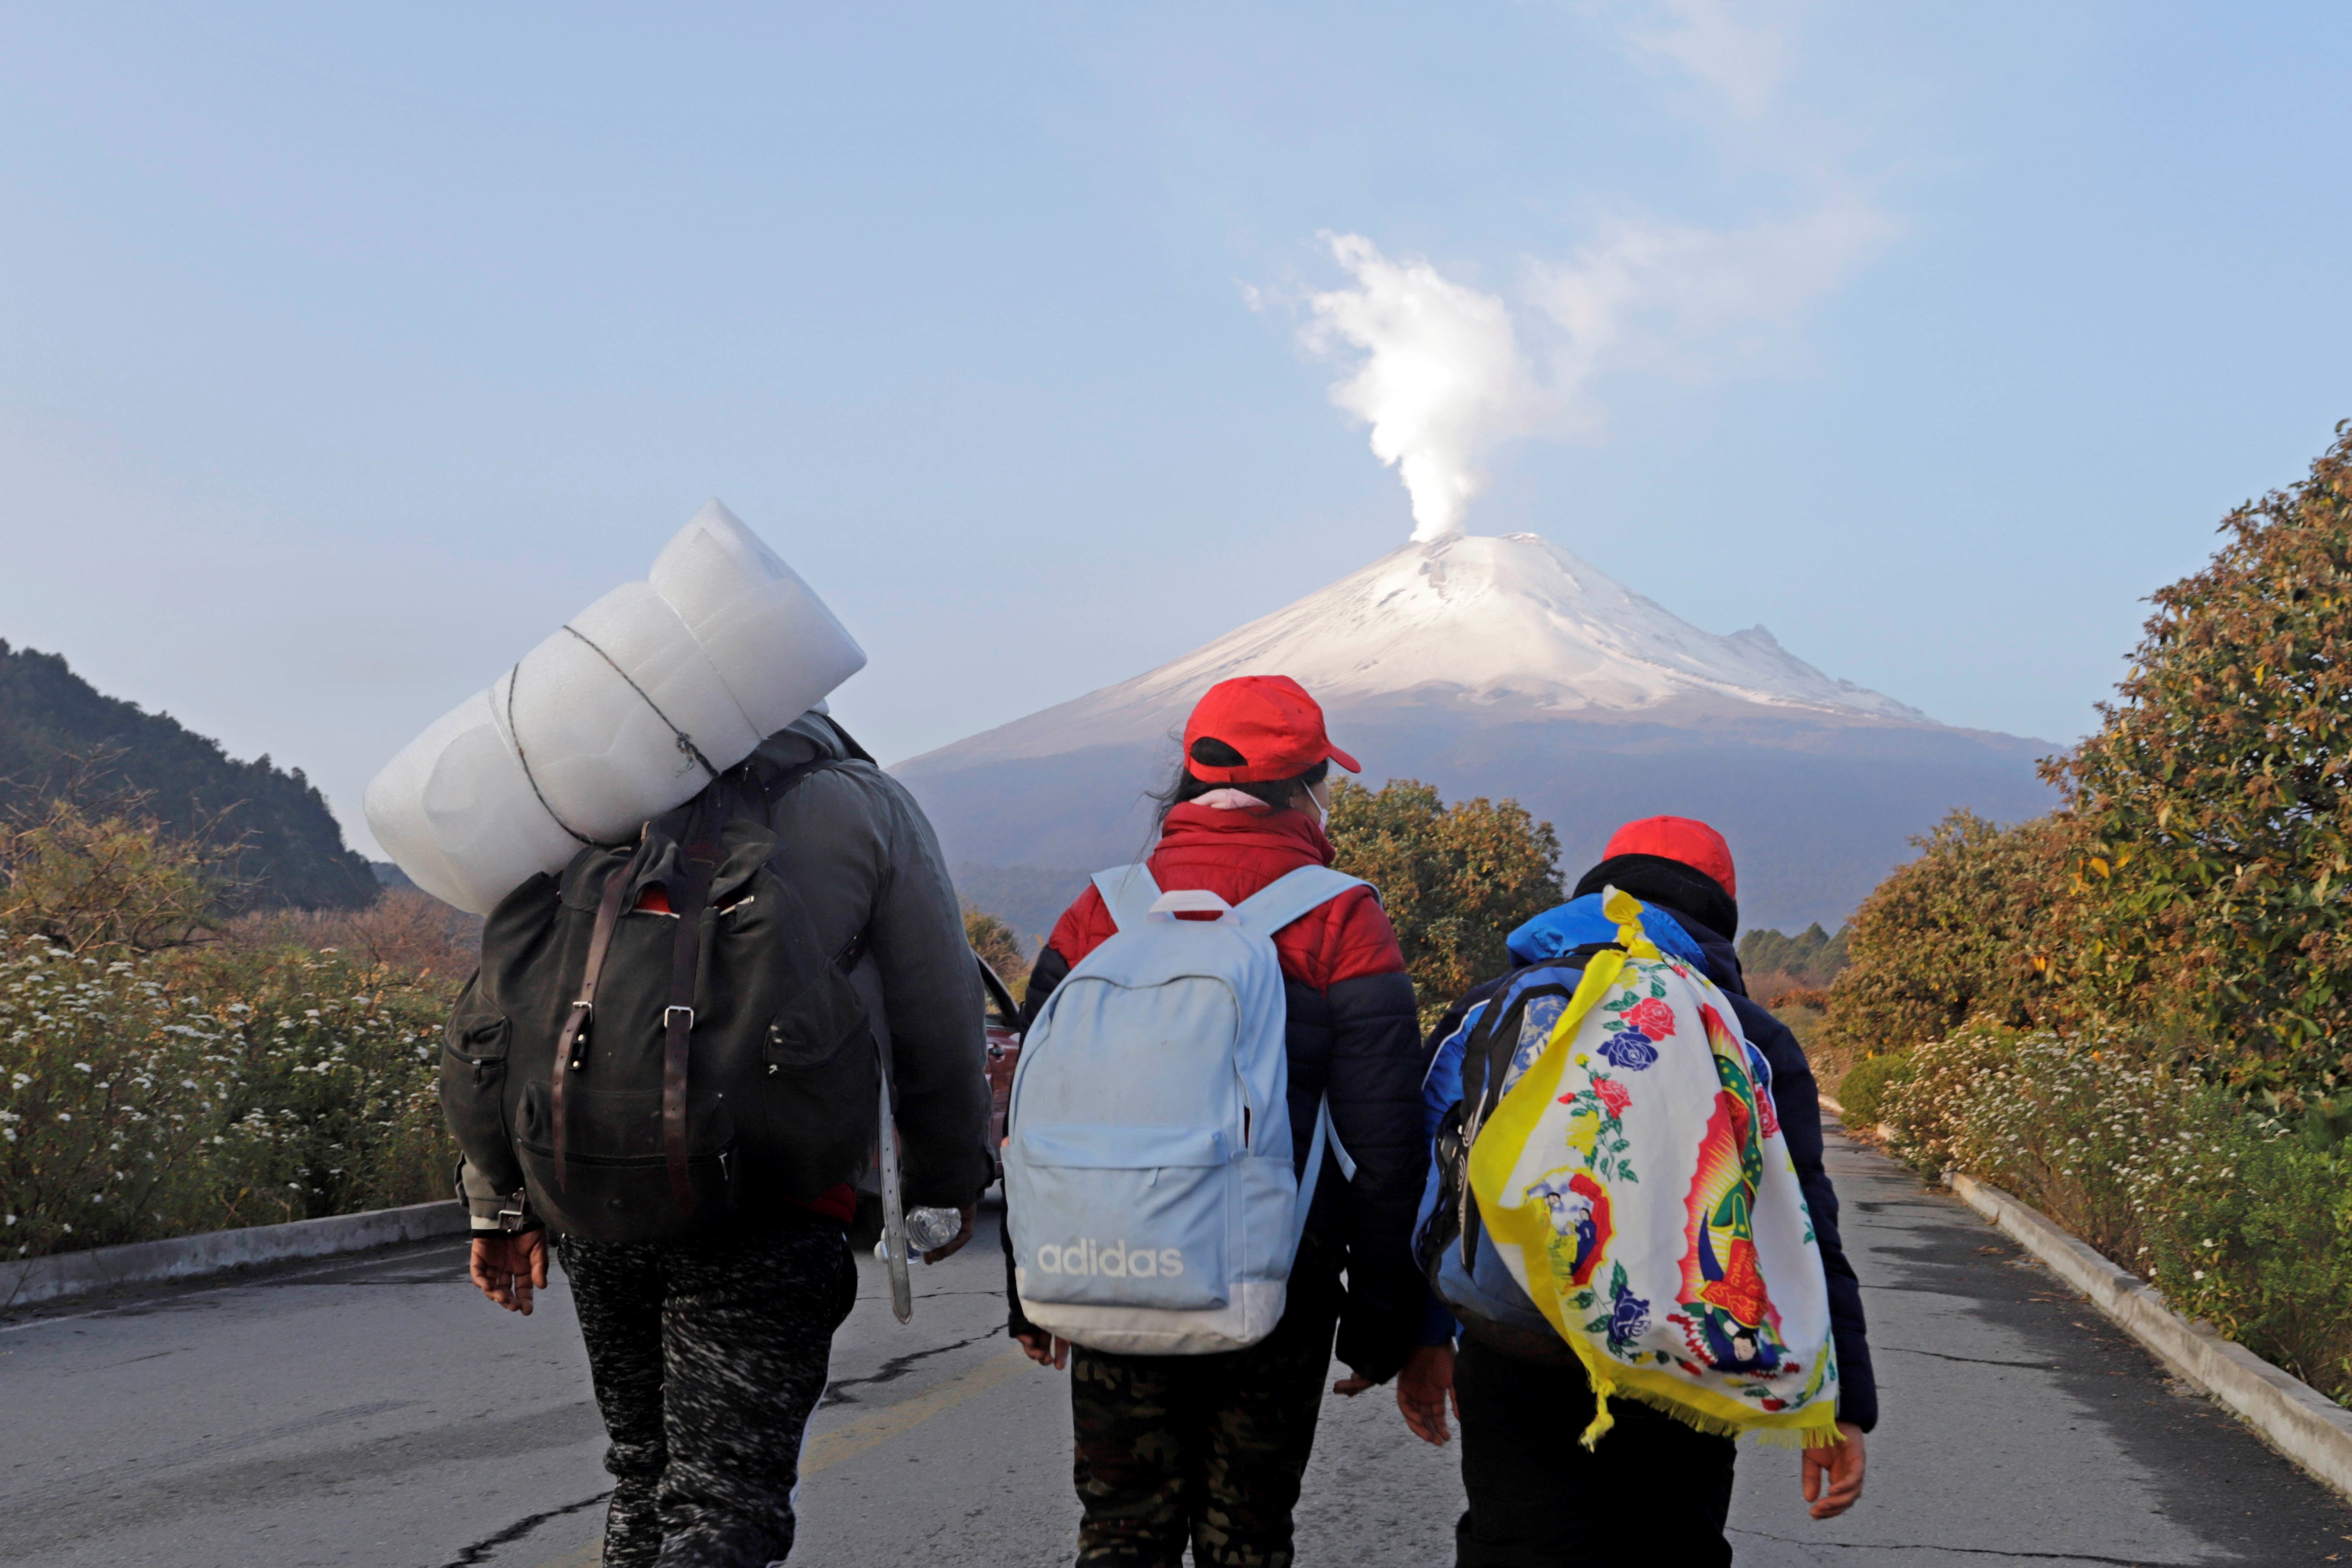 Un grupo de peregrinos avanza hoy miércoles por el Paso de Cortés, en las faldas del Volcán Popocatépetl, en el estado de Puebla rumbo a la Basílica de Guadalupe. (Foto: EFE)
